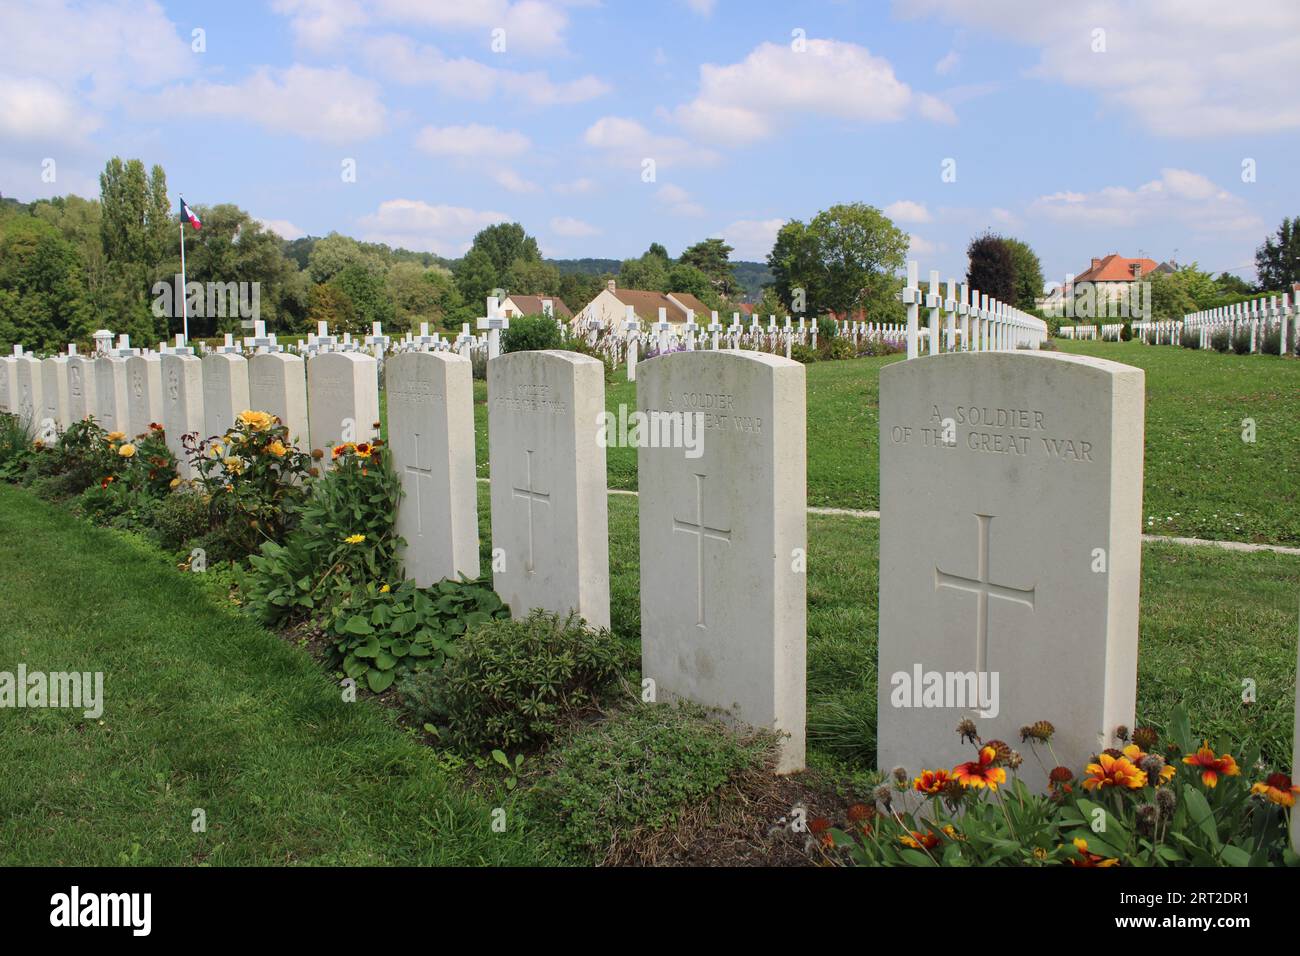 Quatre soldats britanniques inconnus au cimetière de graves de guerre du Commonwealth britannique de Vailly de la bataille de l'Aisne 1914 Banque D'Images